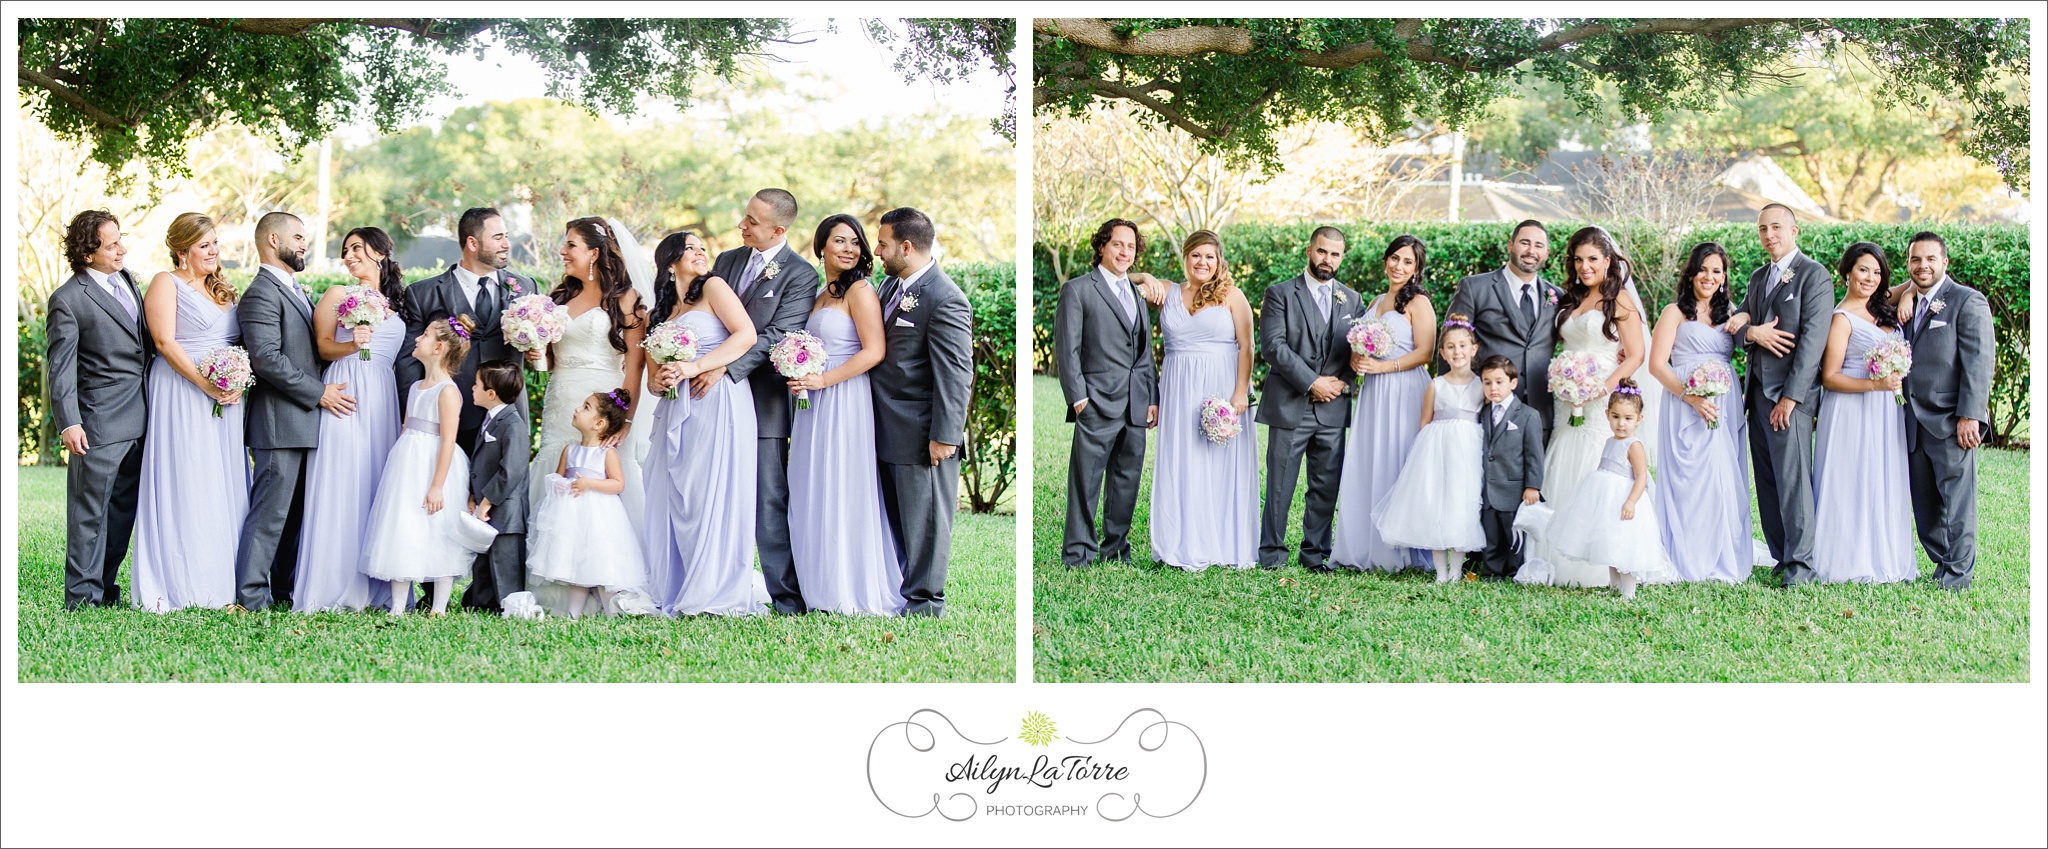 Davis Island Garden Club Wedding |© Ailyn La Torre Photography 2014